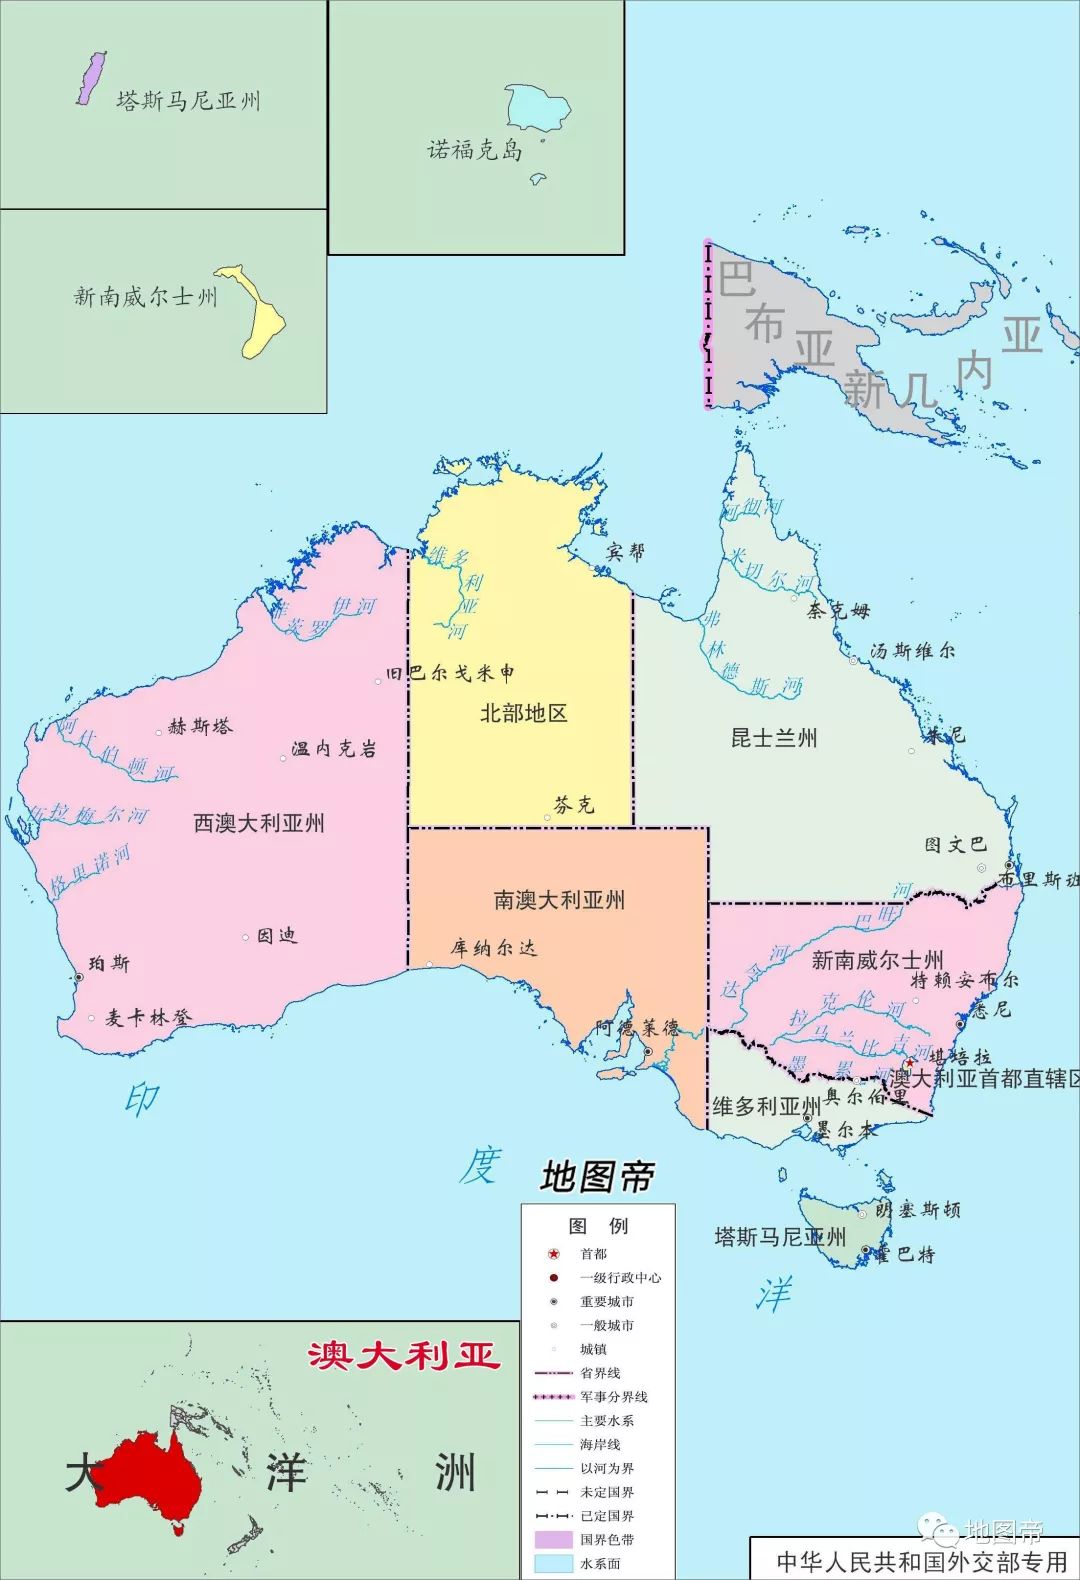 澳大利亚面积769万平方公里，为何只有8个省级行政区？